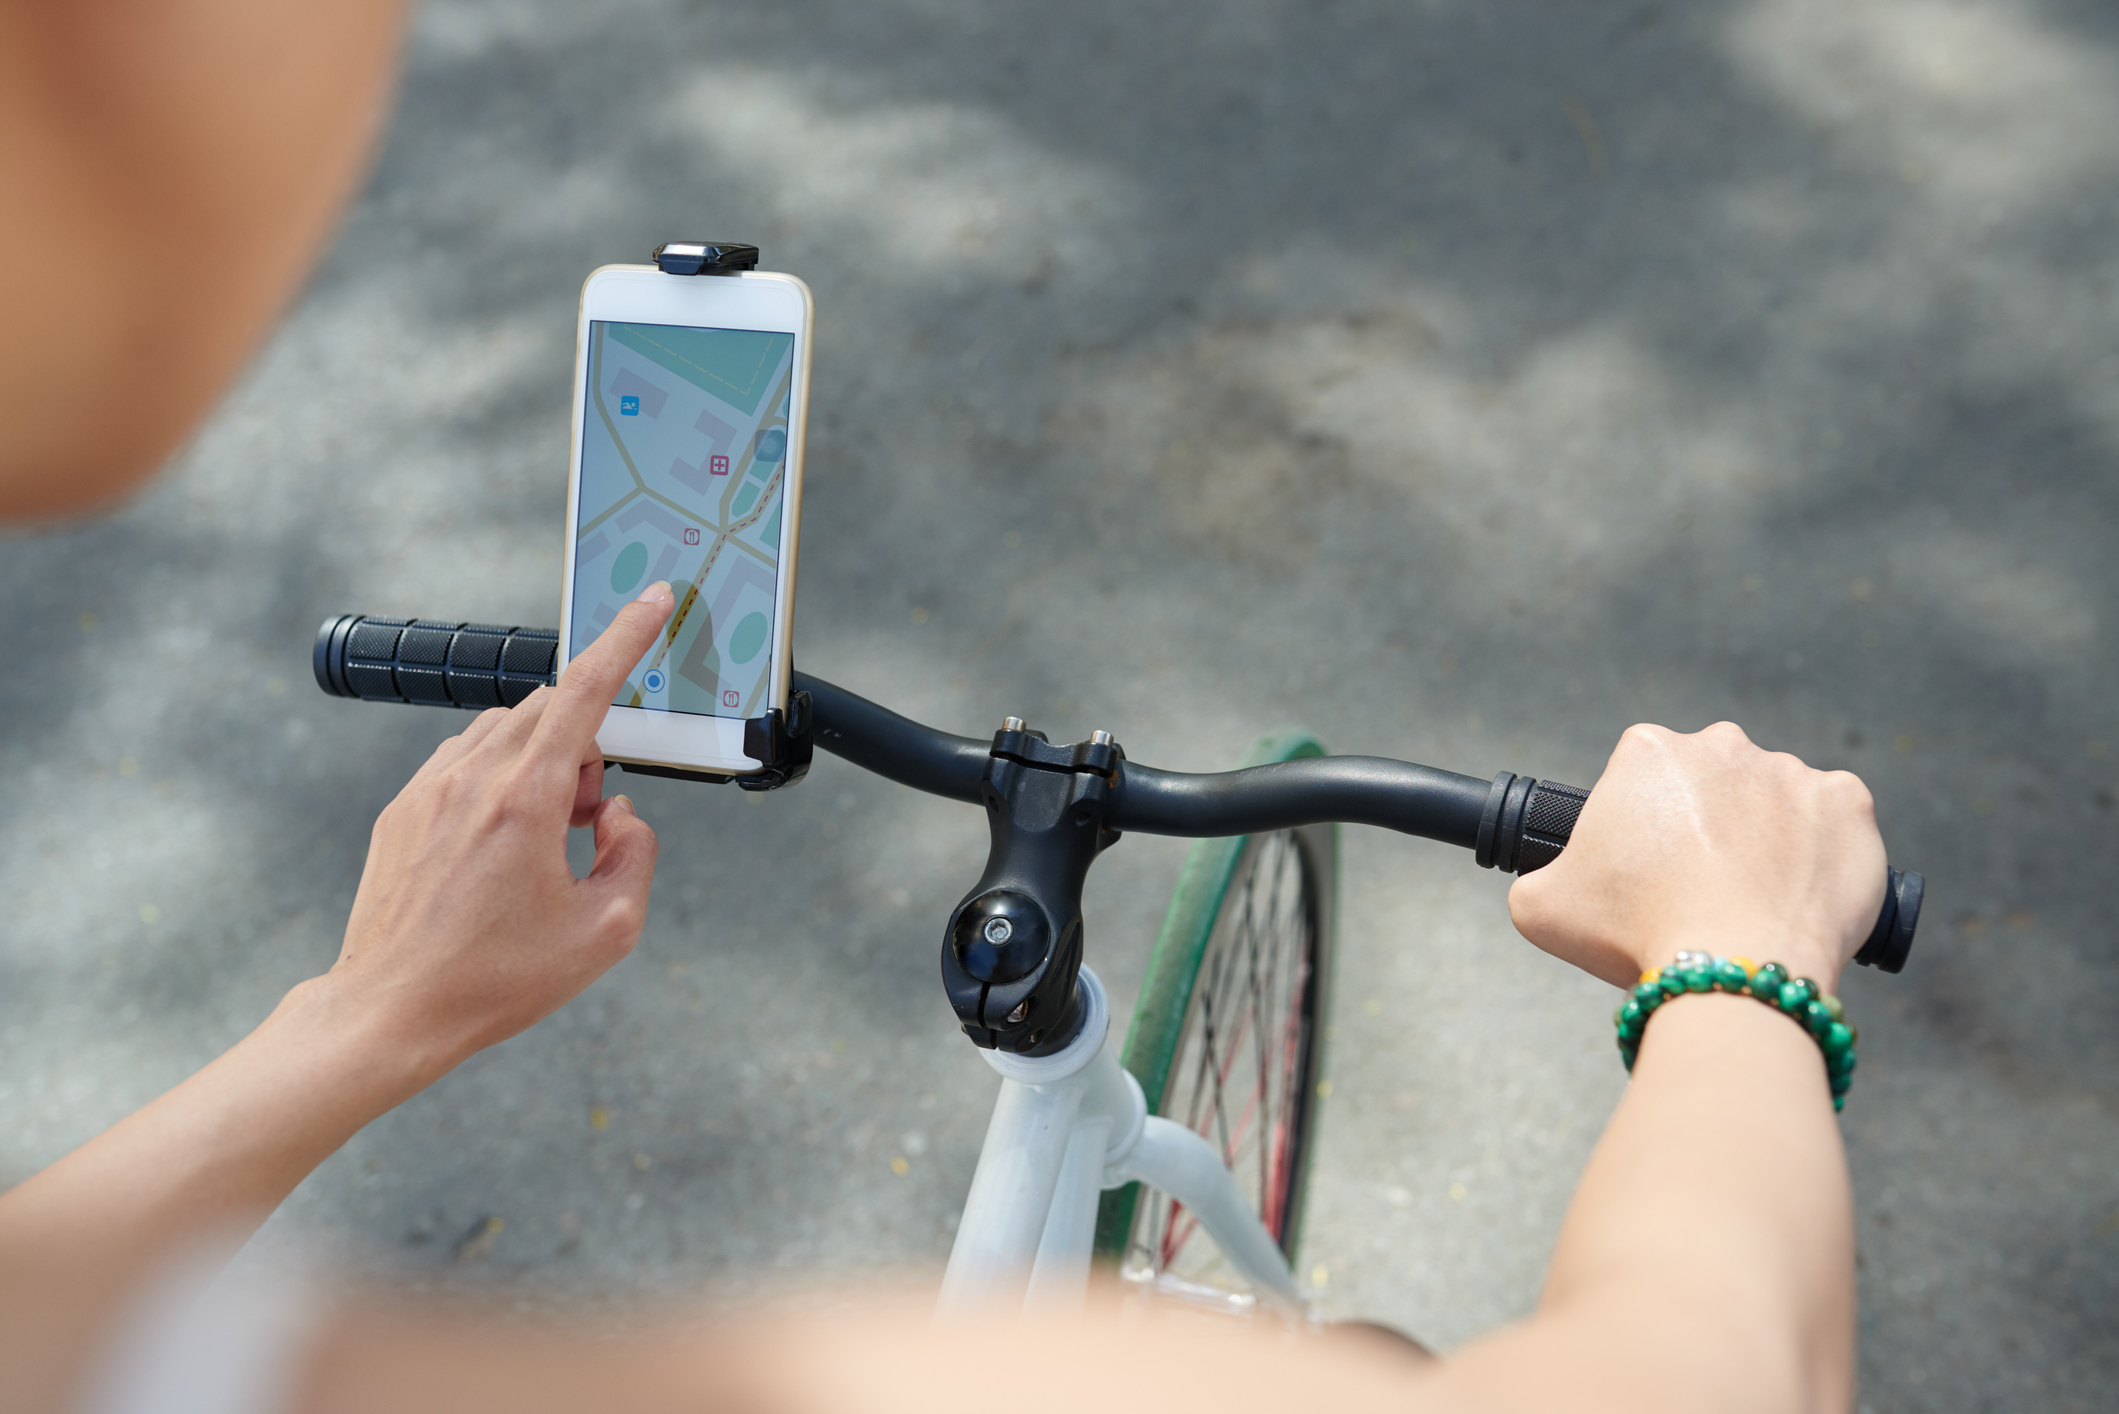 WICKED CHILI Tour Case wasserdichte Fahrradhalterung für Apple iPhone 11  Pro Max Fahrrad / Motorrad Handy Halterung, schwarz